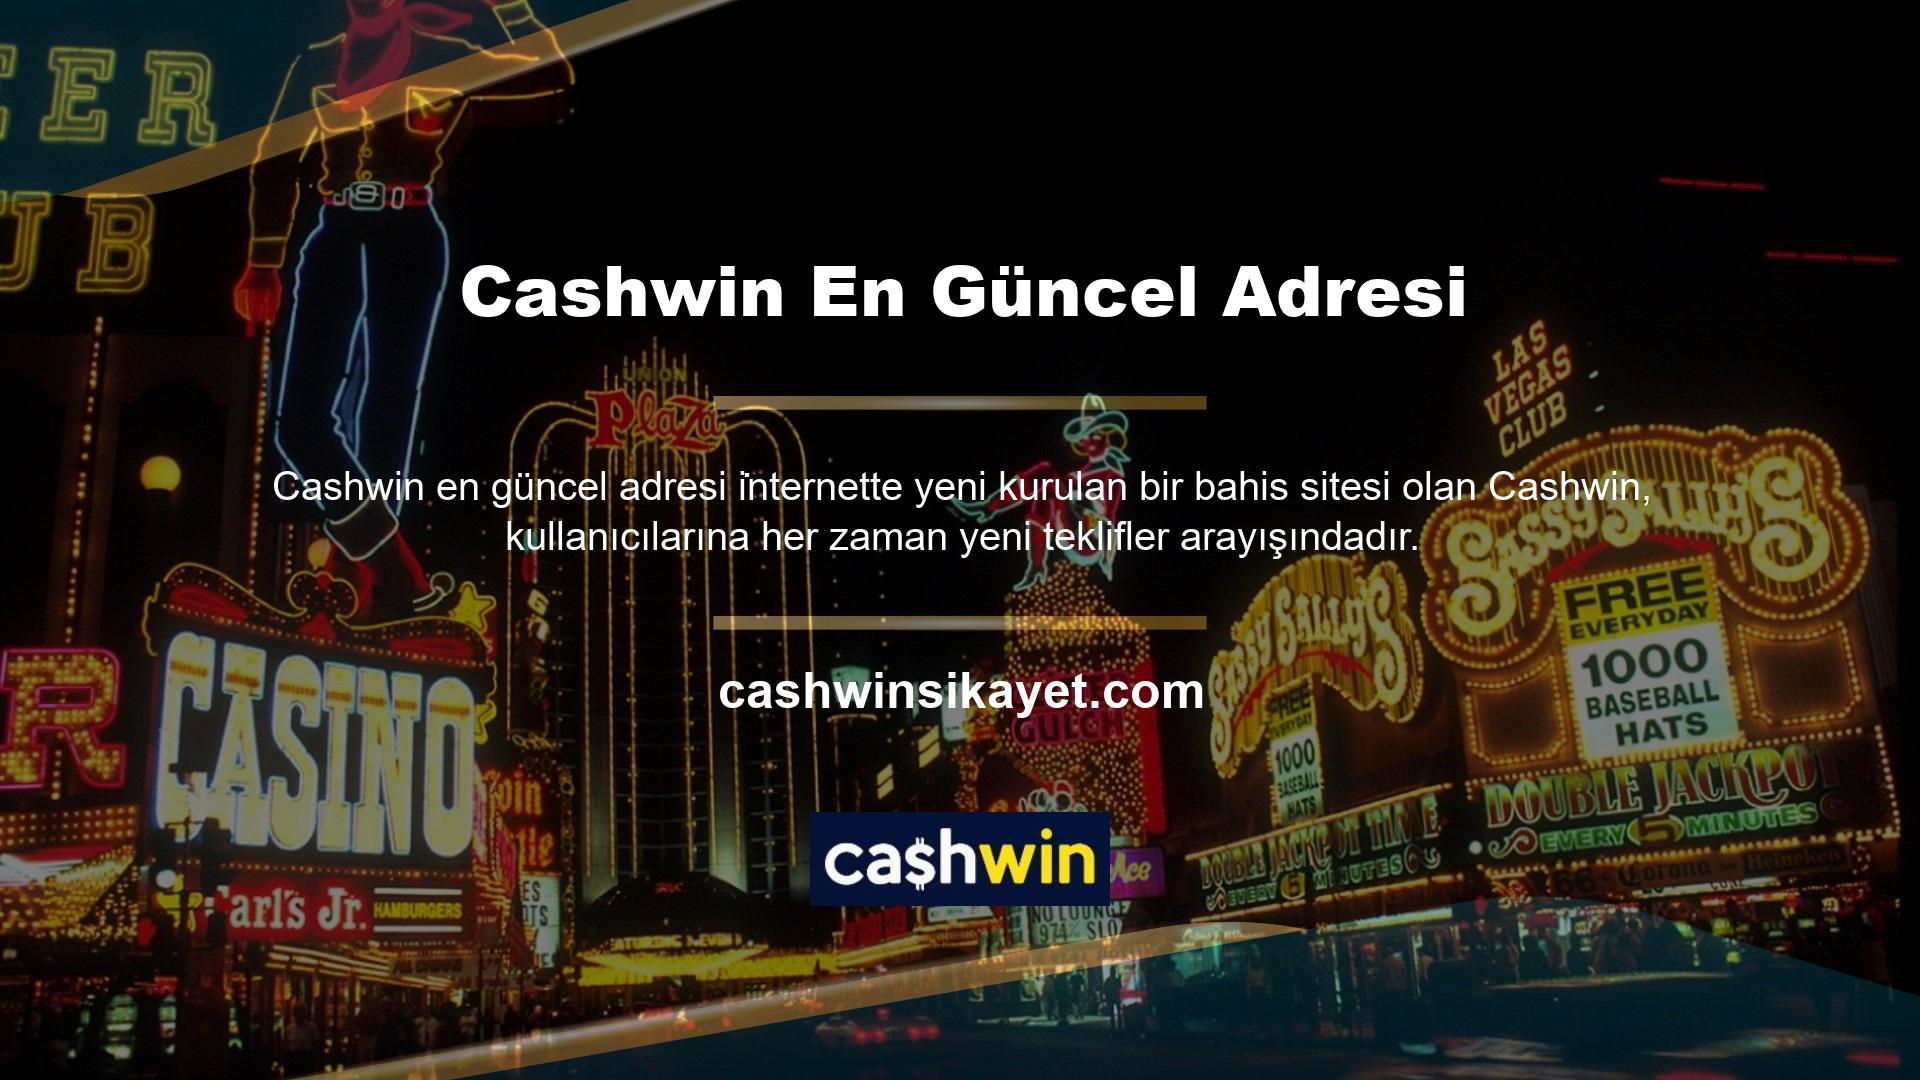 Cashwin, dinamik yapısı ve yenilikçi içeriğiyle sürekli olarak yeniliğin itici gücünü kullanıcılarına ortaya koyuyor ve onlara en son teknolojiye sahip casino ve casino hizmetleri sunuyor